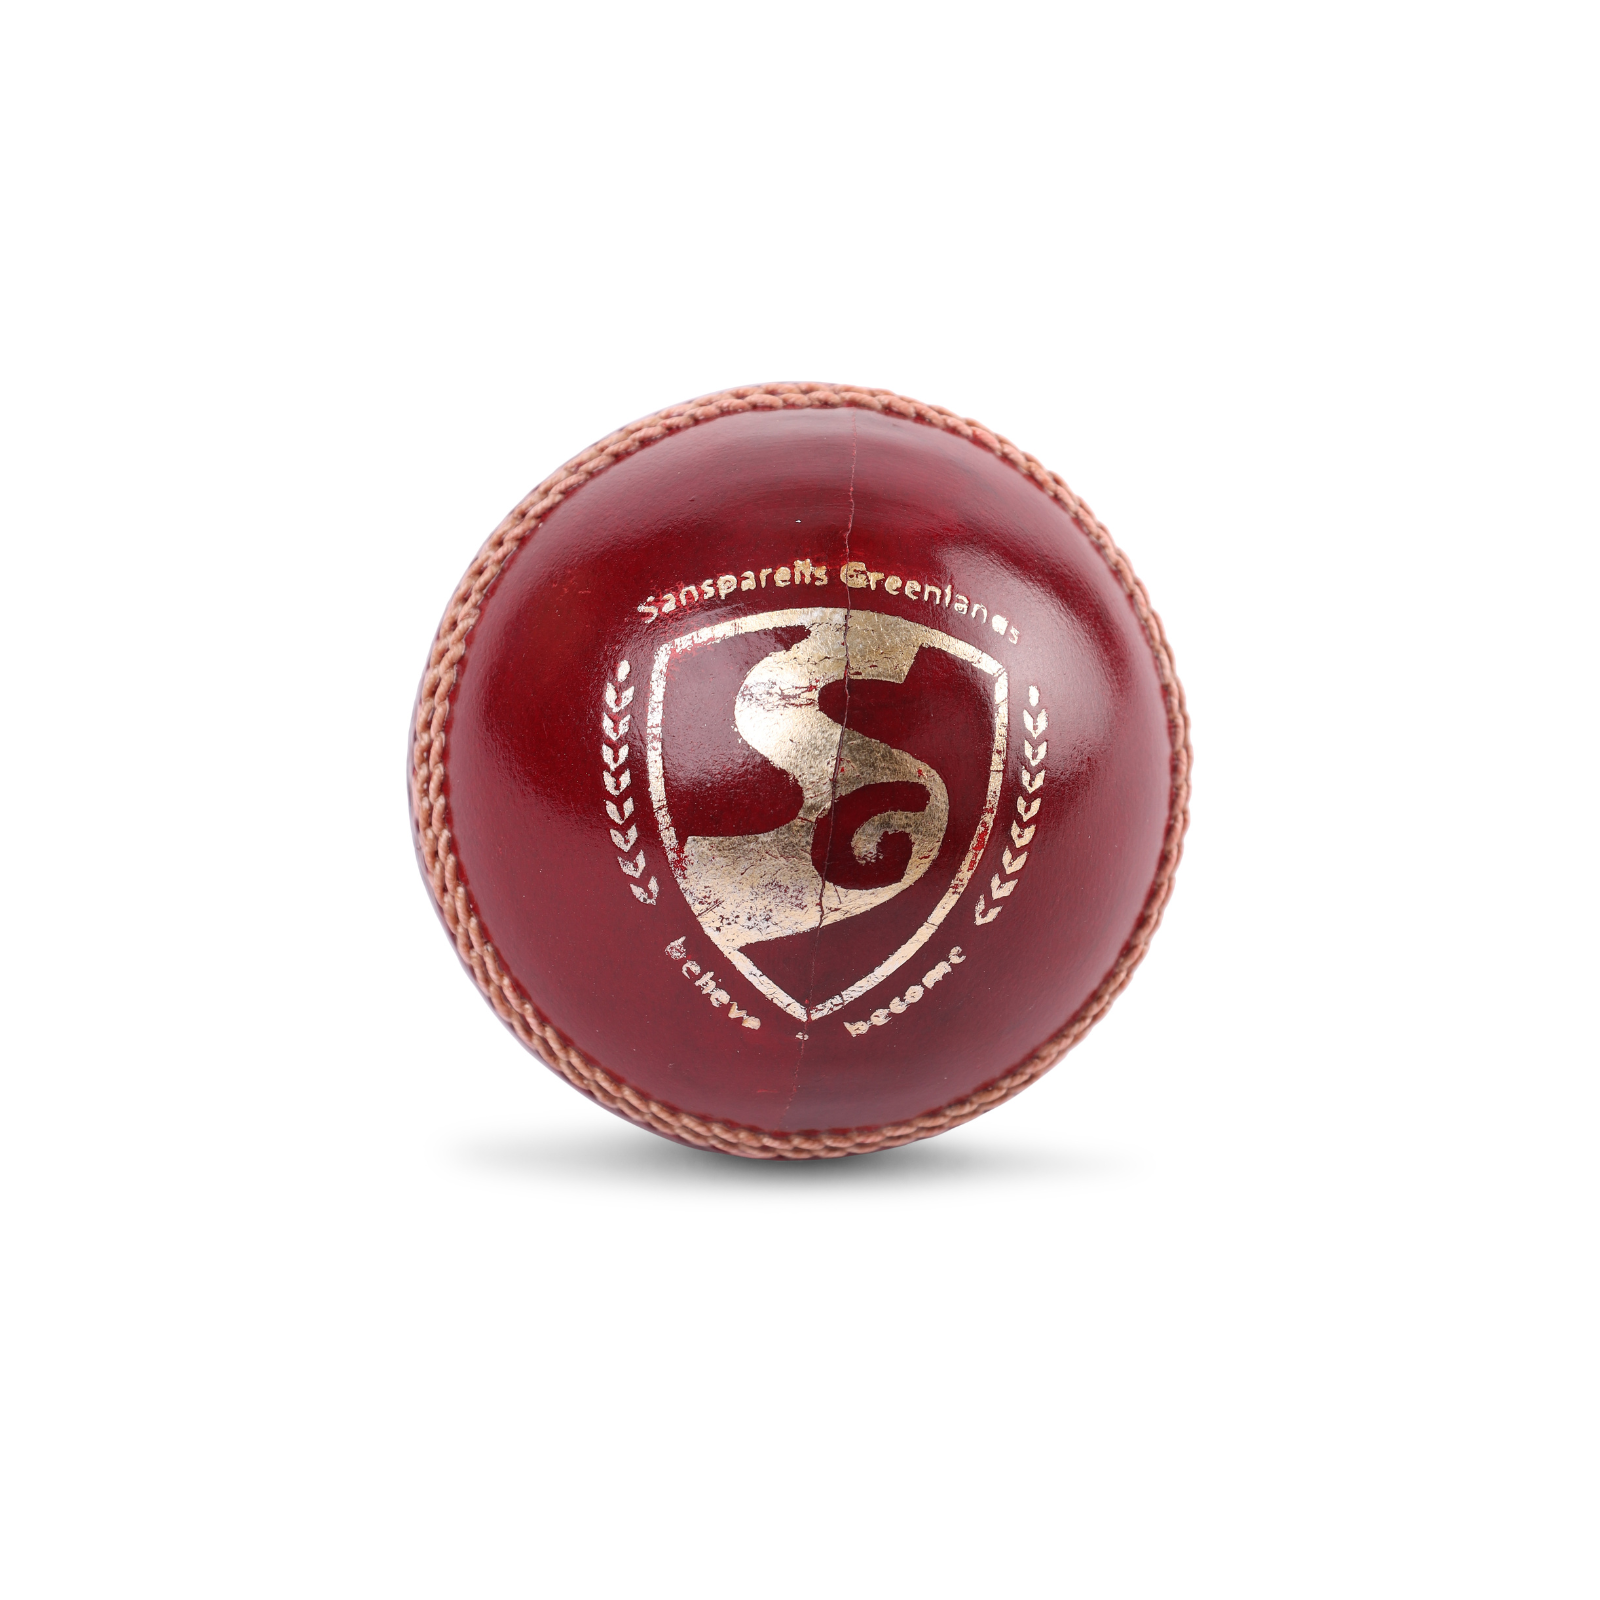 SG League Cricket Leather Ball